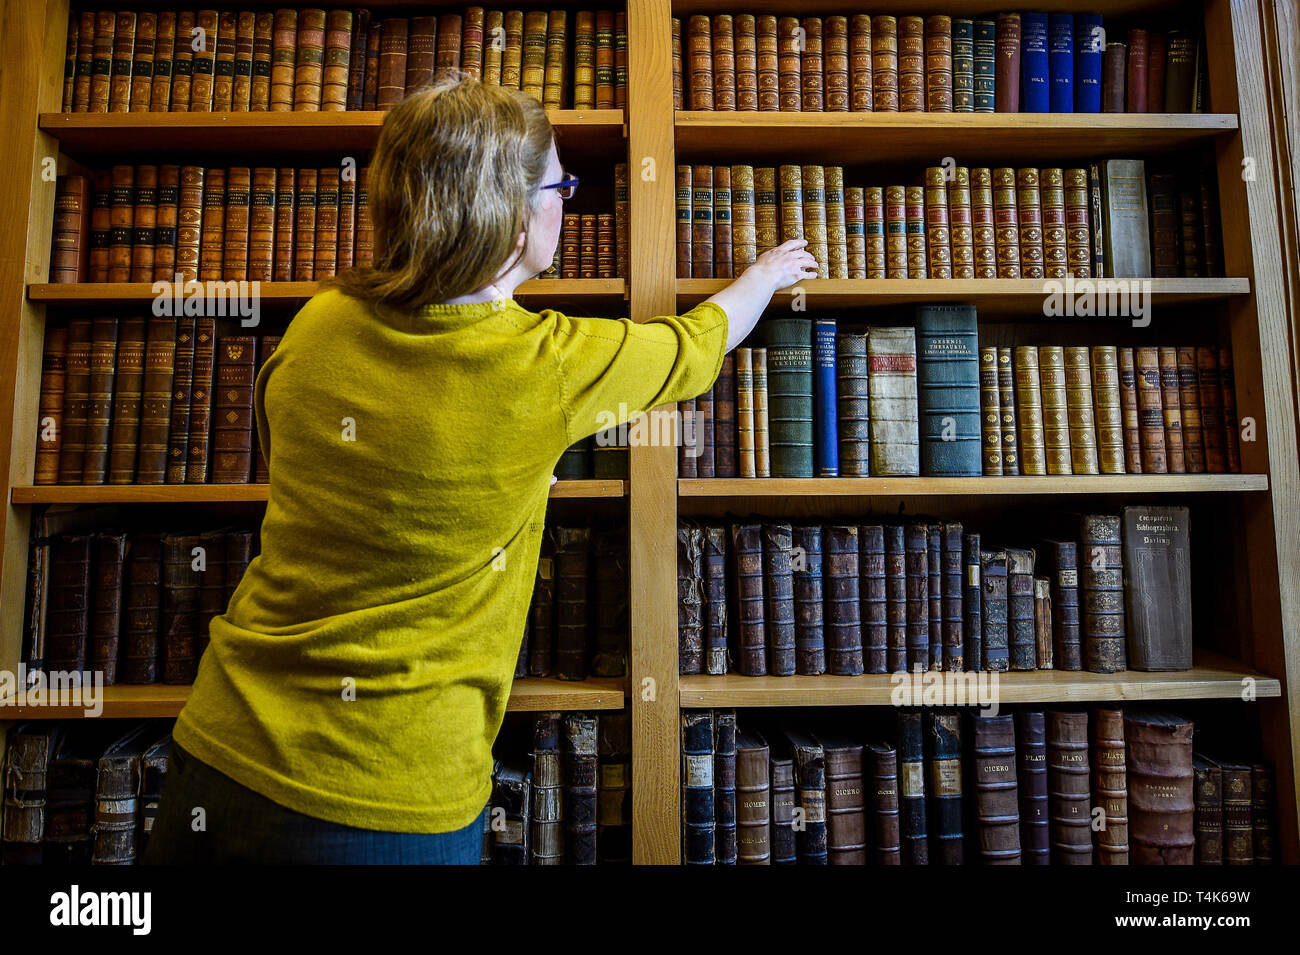 Die Kathedrale von Salisbury Archivar Emily Naish erreicht für Leder - gebundene Bücher im 15. Jahrhundert die Bibliothek der Kathedrale, wo ein Projekt zum Katalog, sauber und finden Sie mehr über die seltene Buch Sammlung ist im Gange. Stockfoto